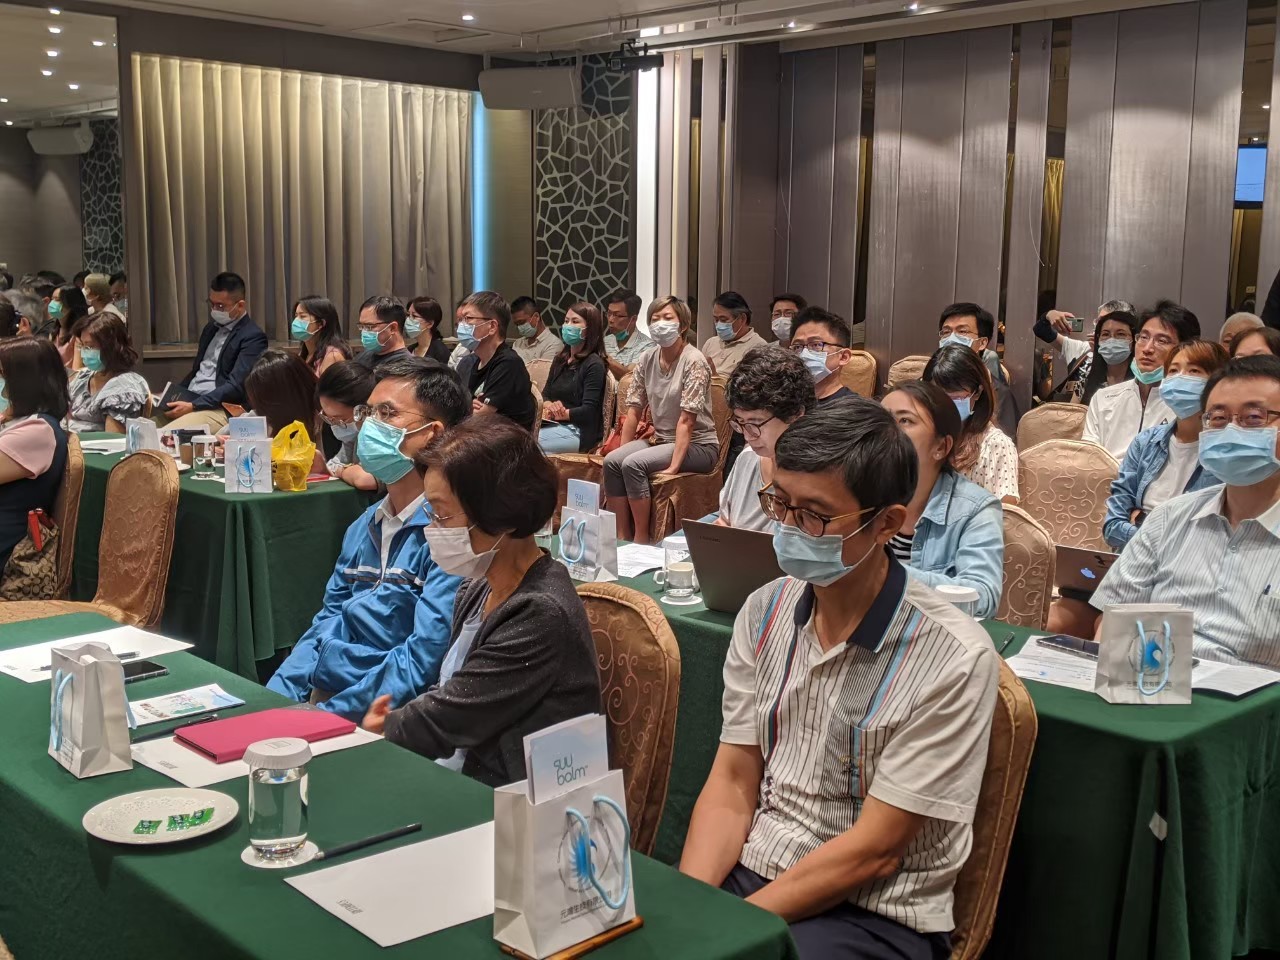 本公司於2020年7月5日於台中永豐棧酒店舉辦濕疹研討會